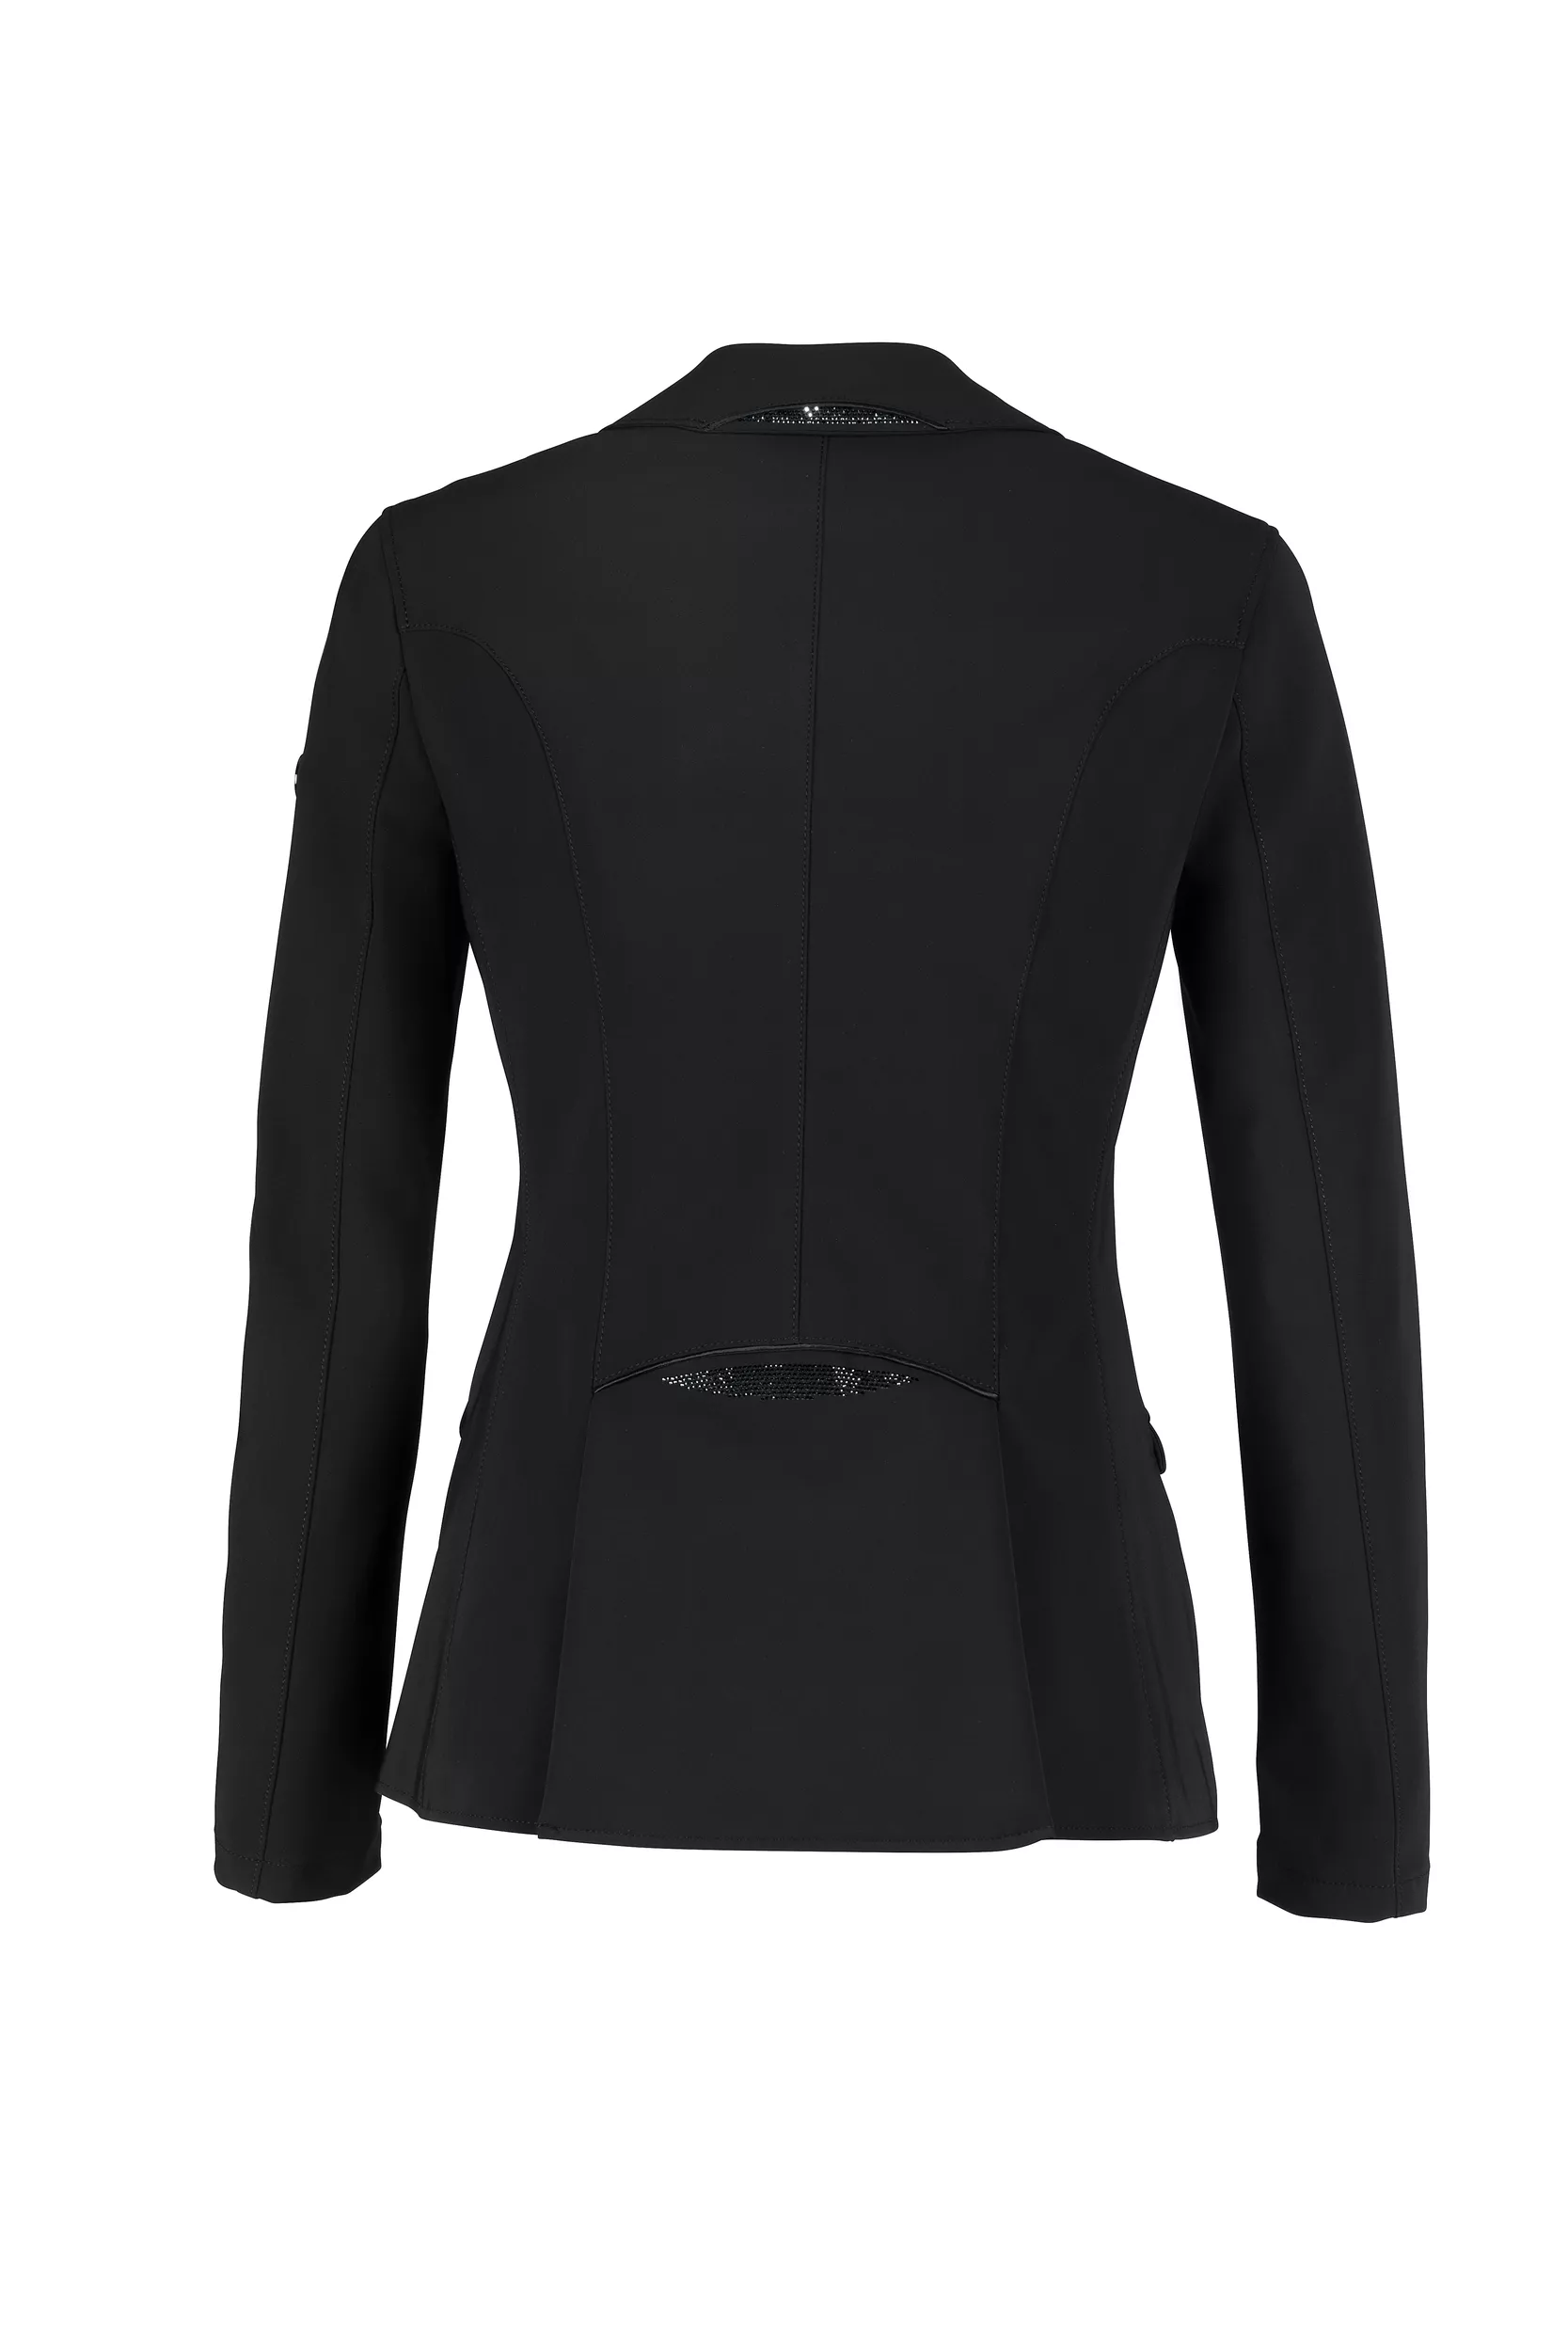 Chaqueta de competición ISALIE para mujer (chaqueta), SPORTSWEAR 22, negro